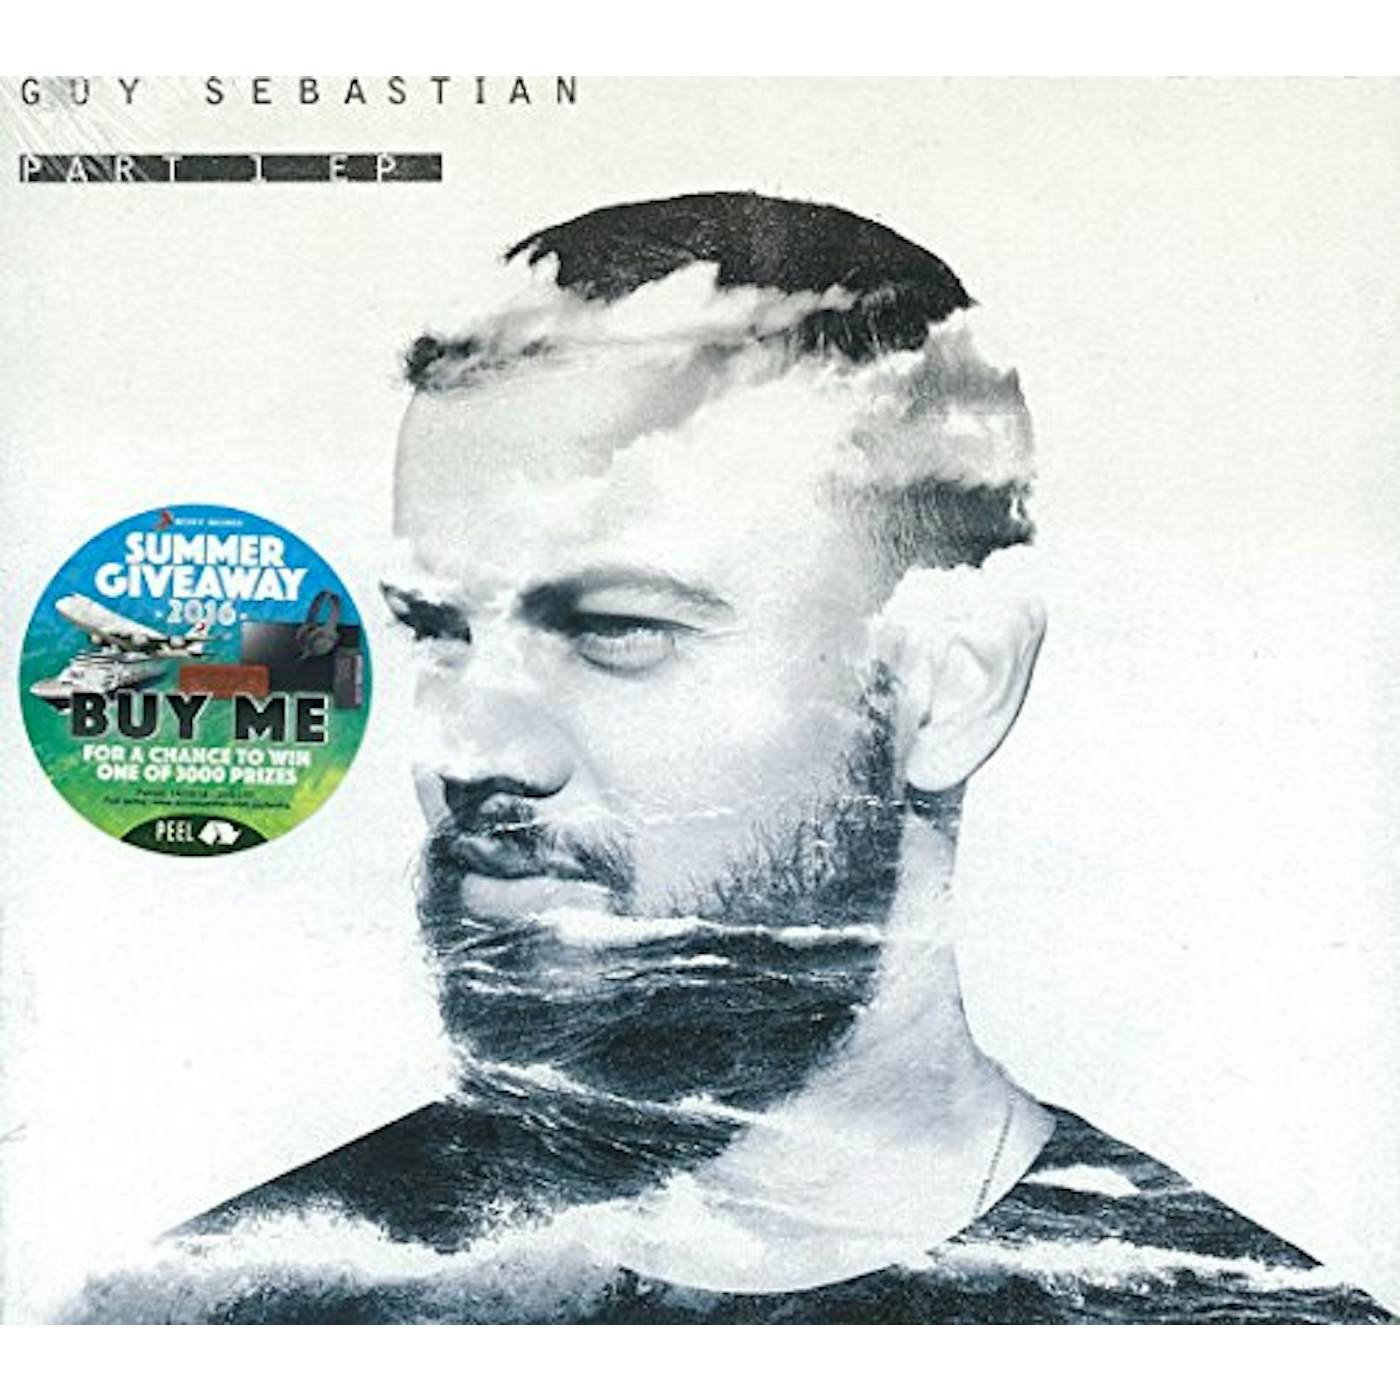 Guy Sebastian PART 1 CD